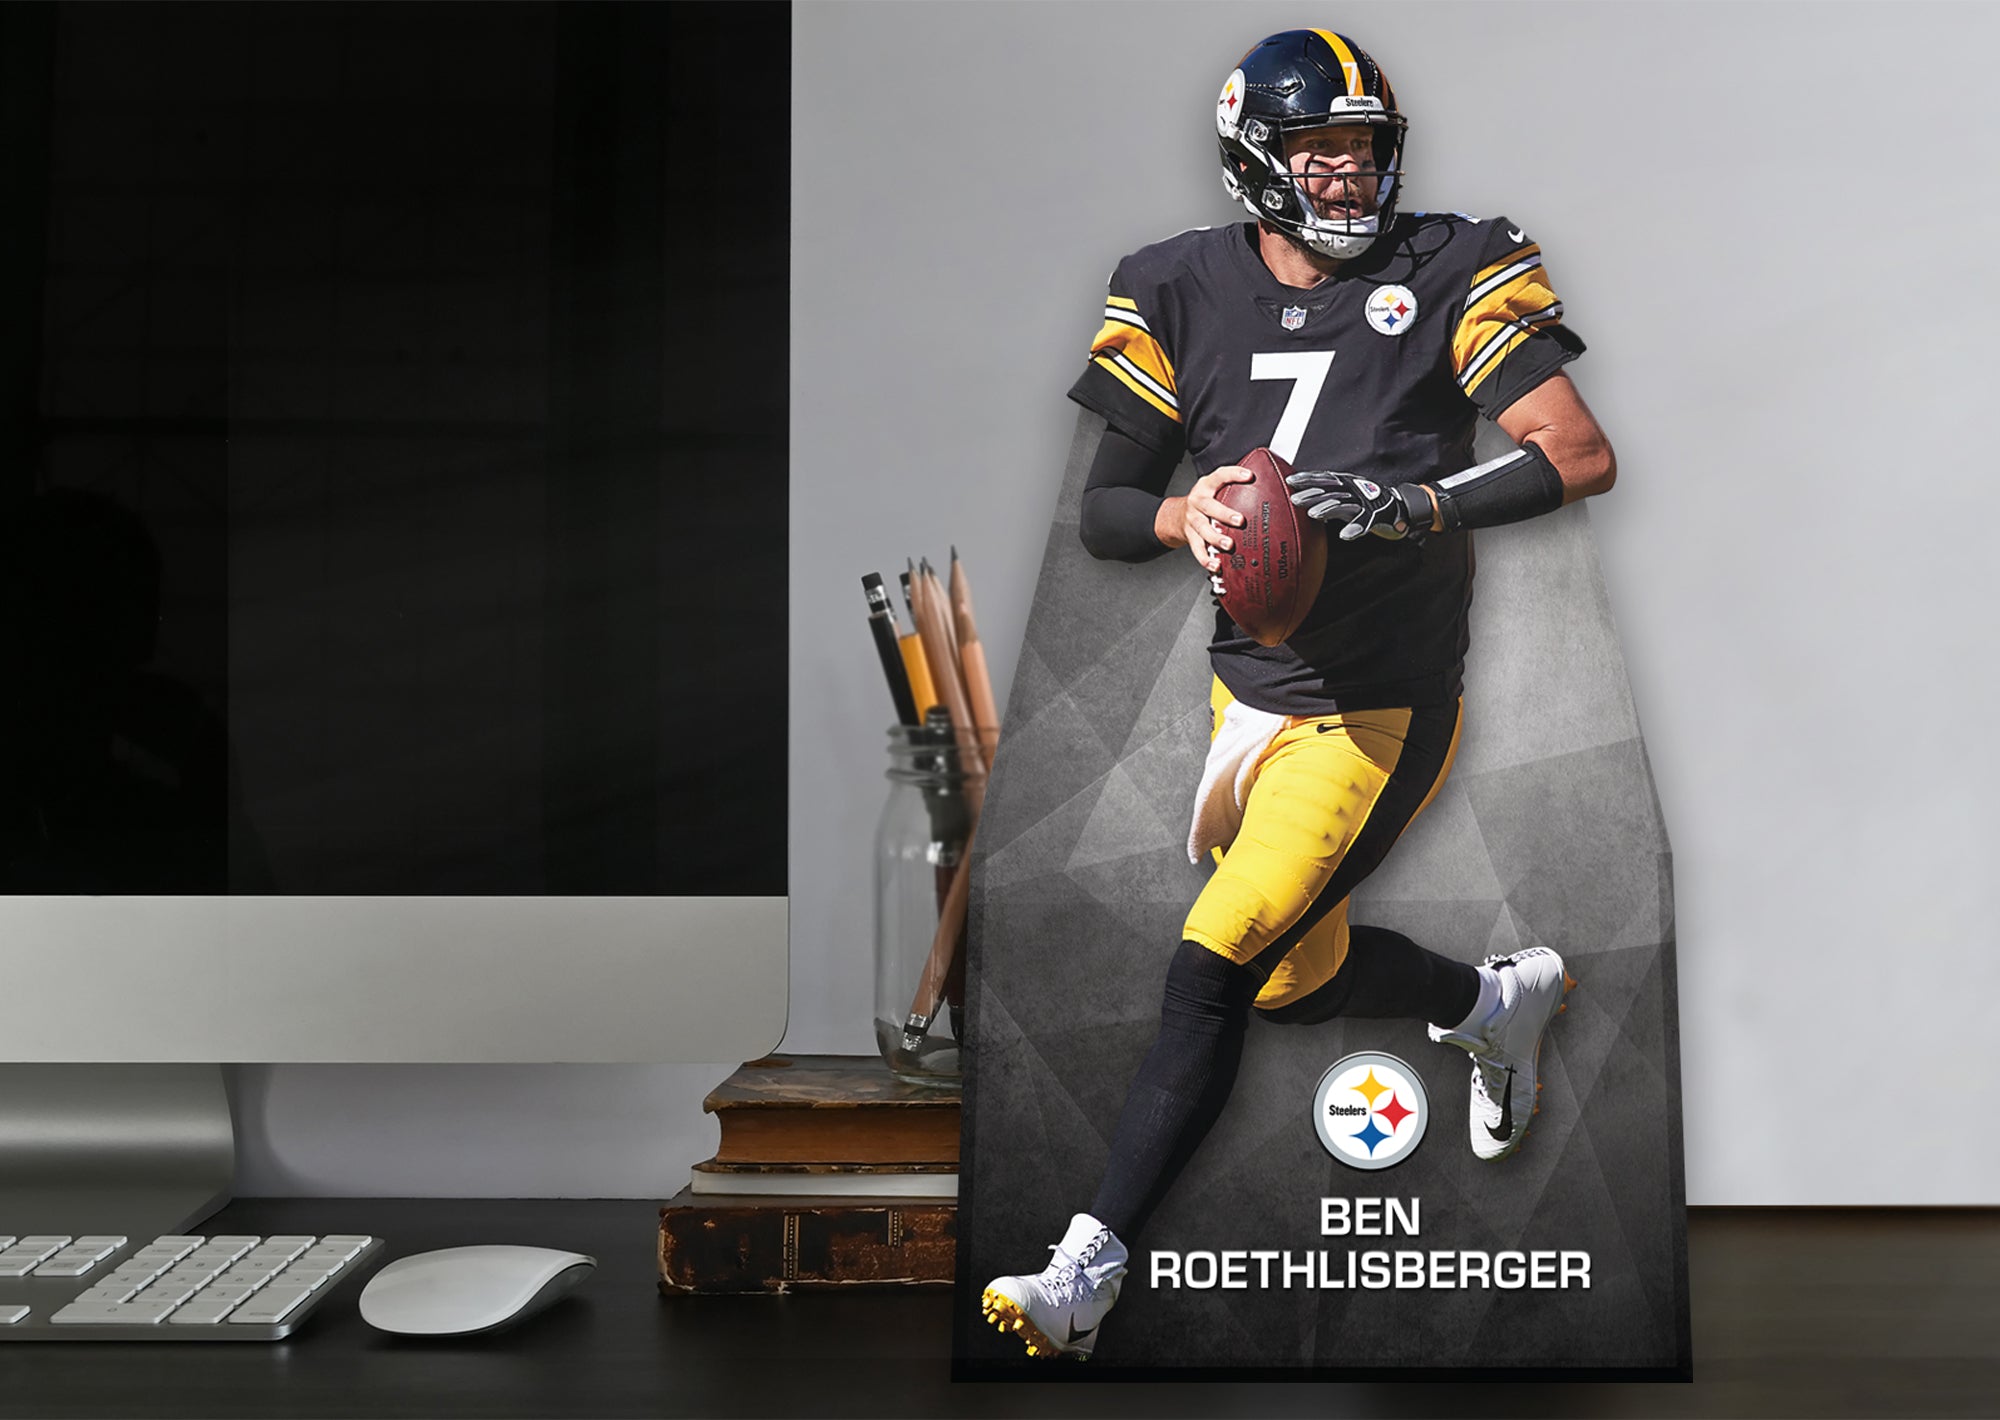 Ben Roethlisberger Wallpaper  Nfl football wallpaper Pittsburgh steelers  football Steelers football